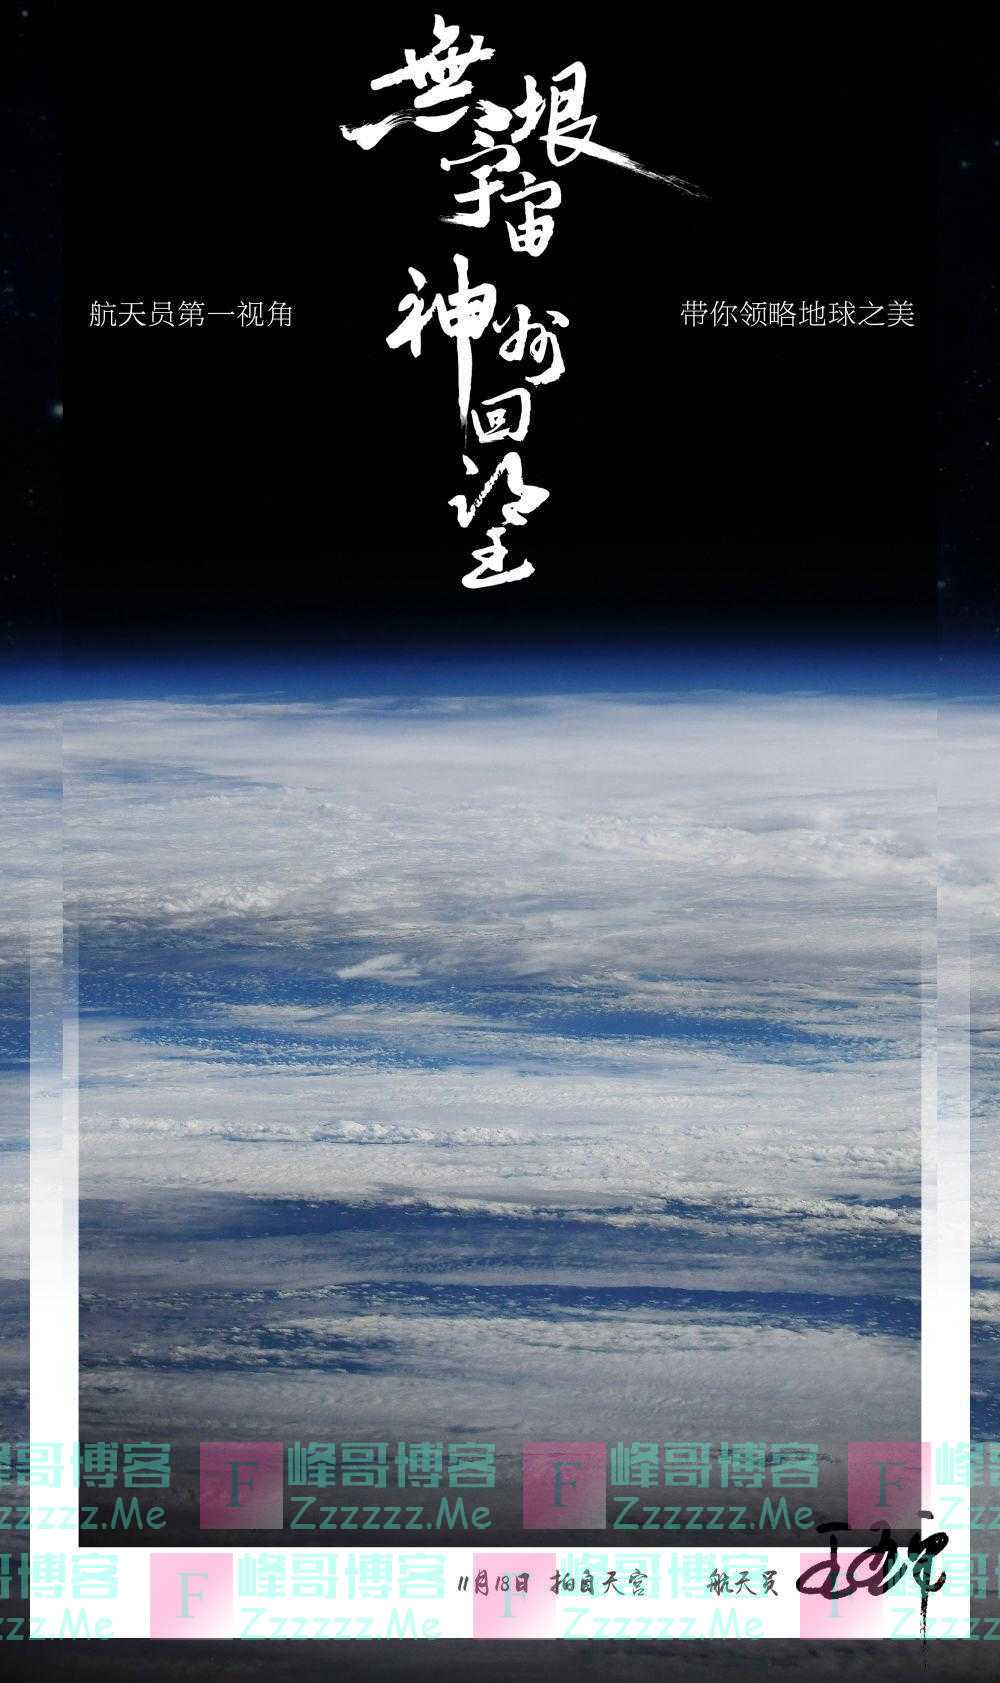 全球拍天宫丨空间站视角！王亚平拍摄的地球大片真美